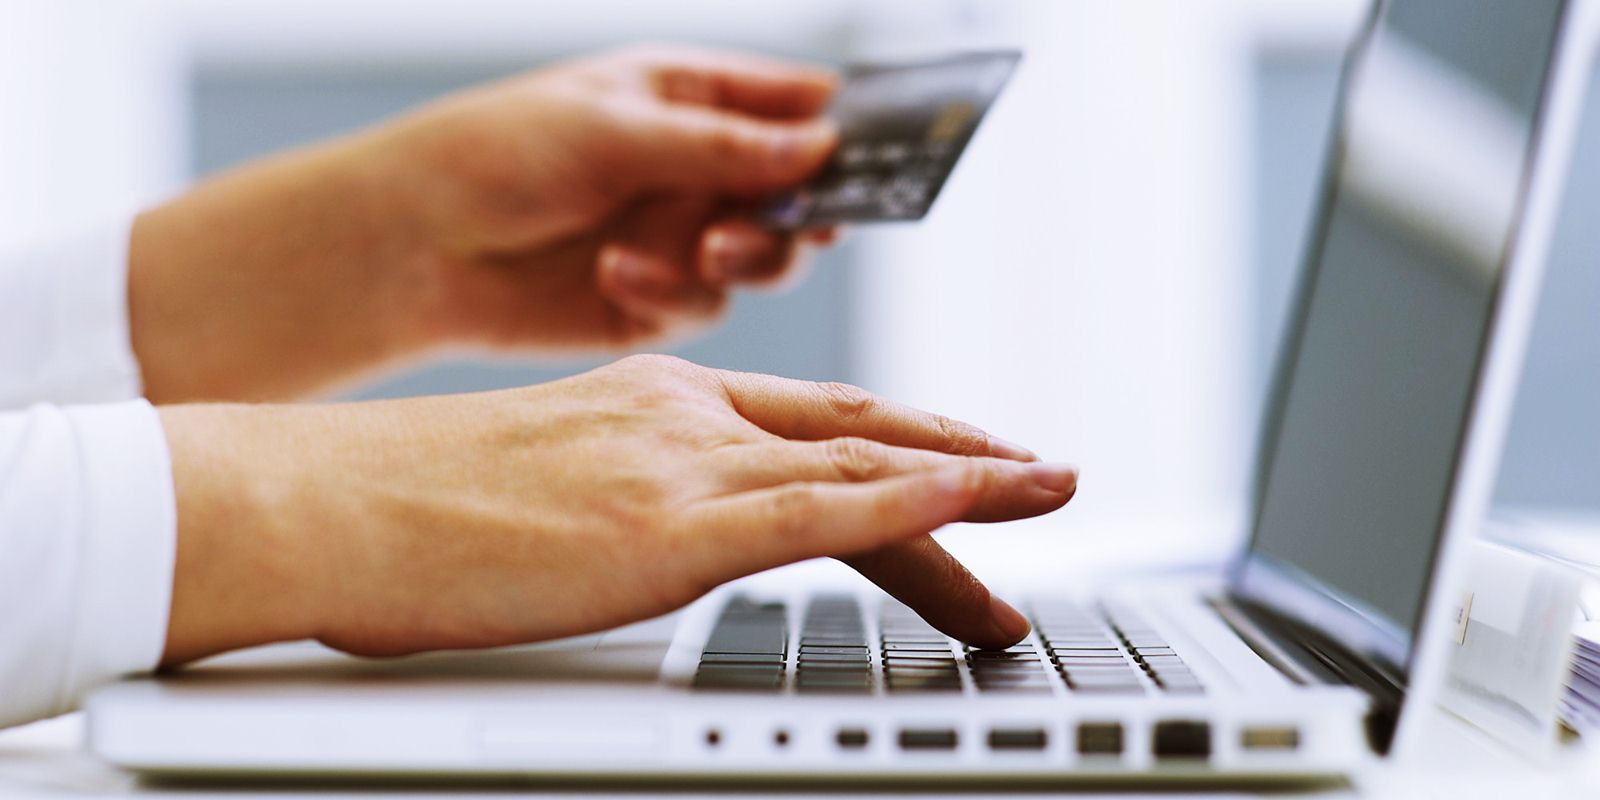 Hati-hati dengan Kemudahan Apply Kartu Kredit Online